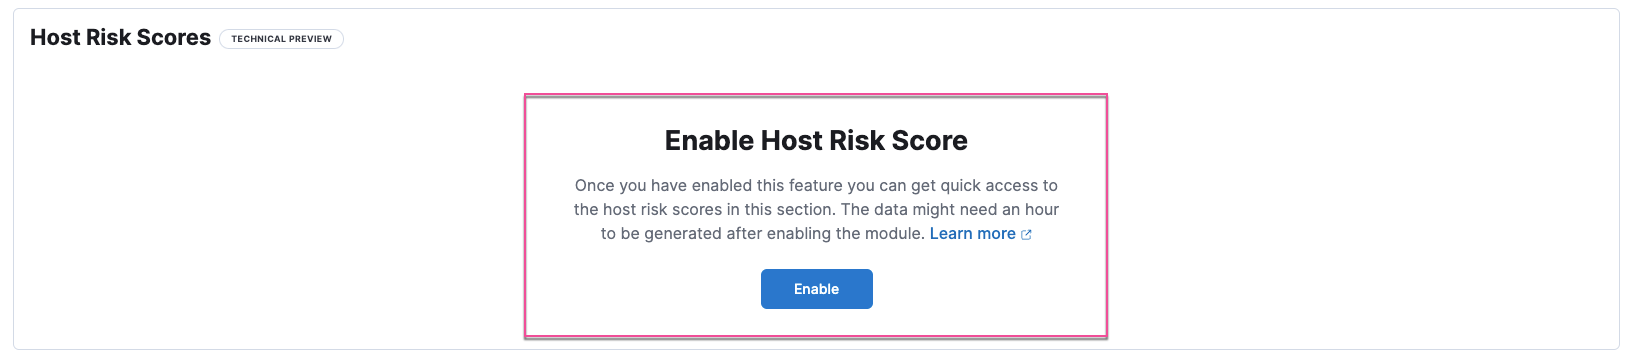 Enable Host Risk Score button